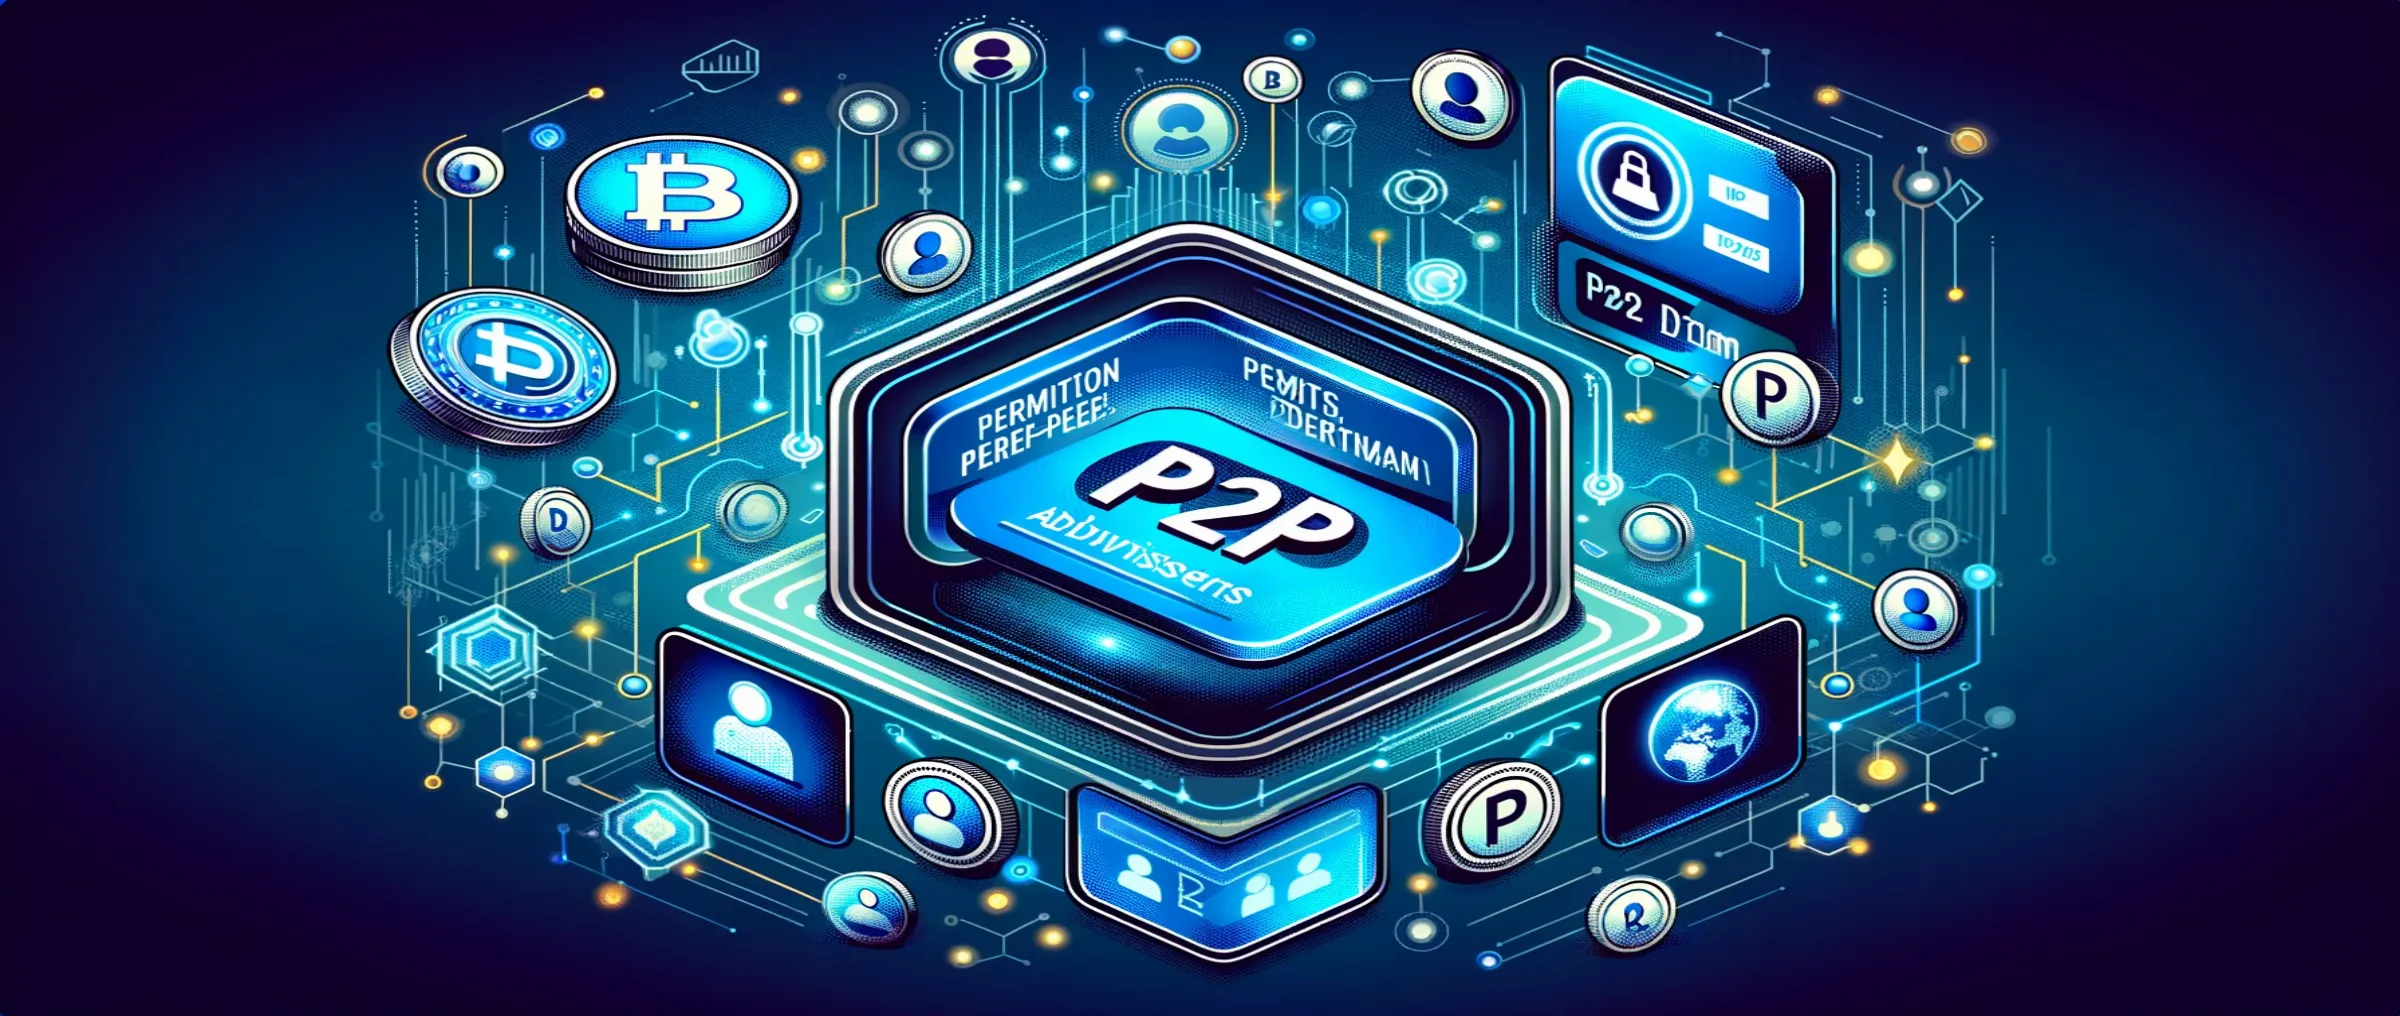 CommEX разрешила всем пользователям размещать P2P-объявления